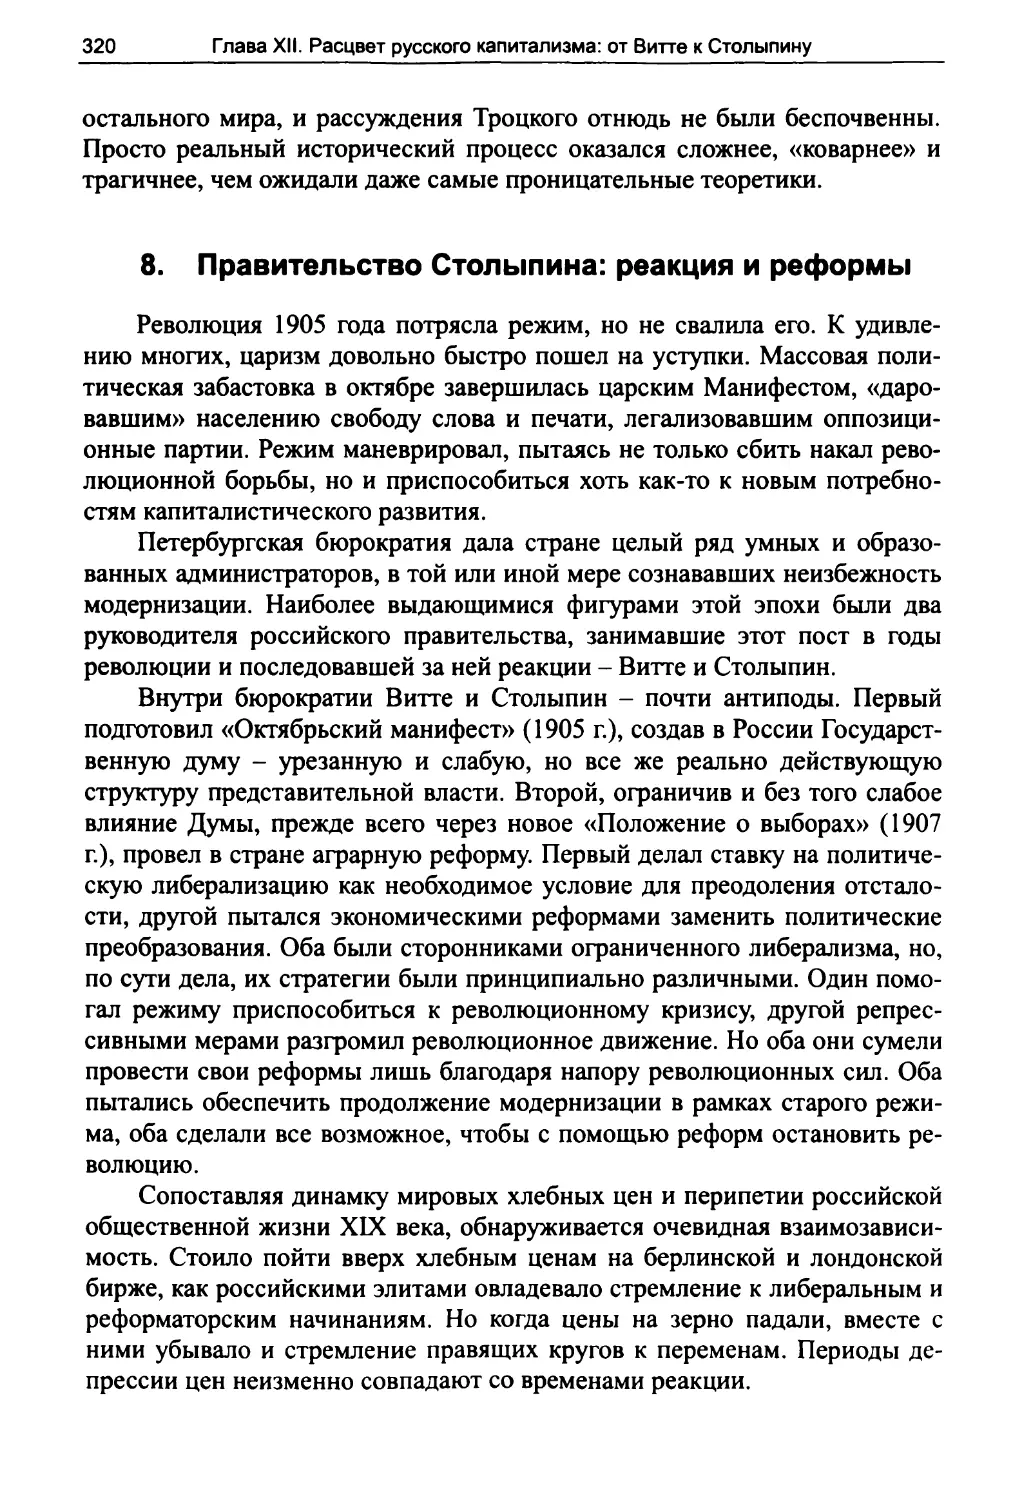 8. Правительство Столыпина: реакция и реформы